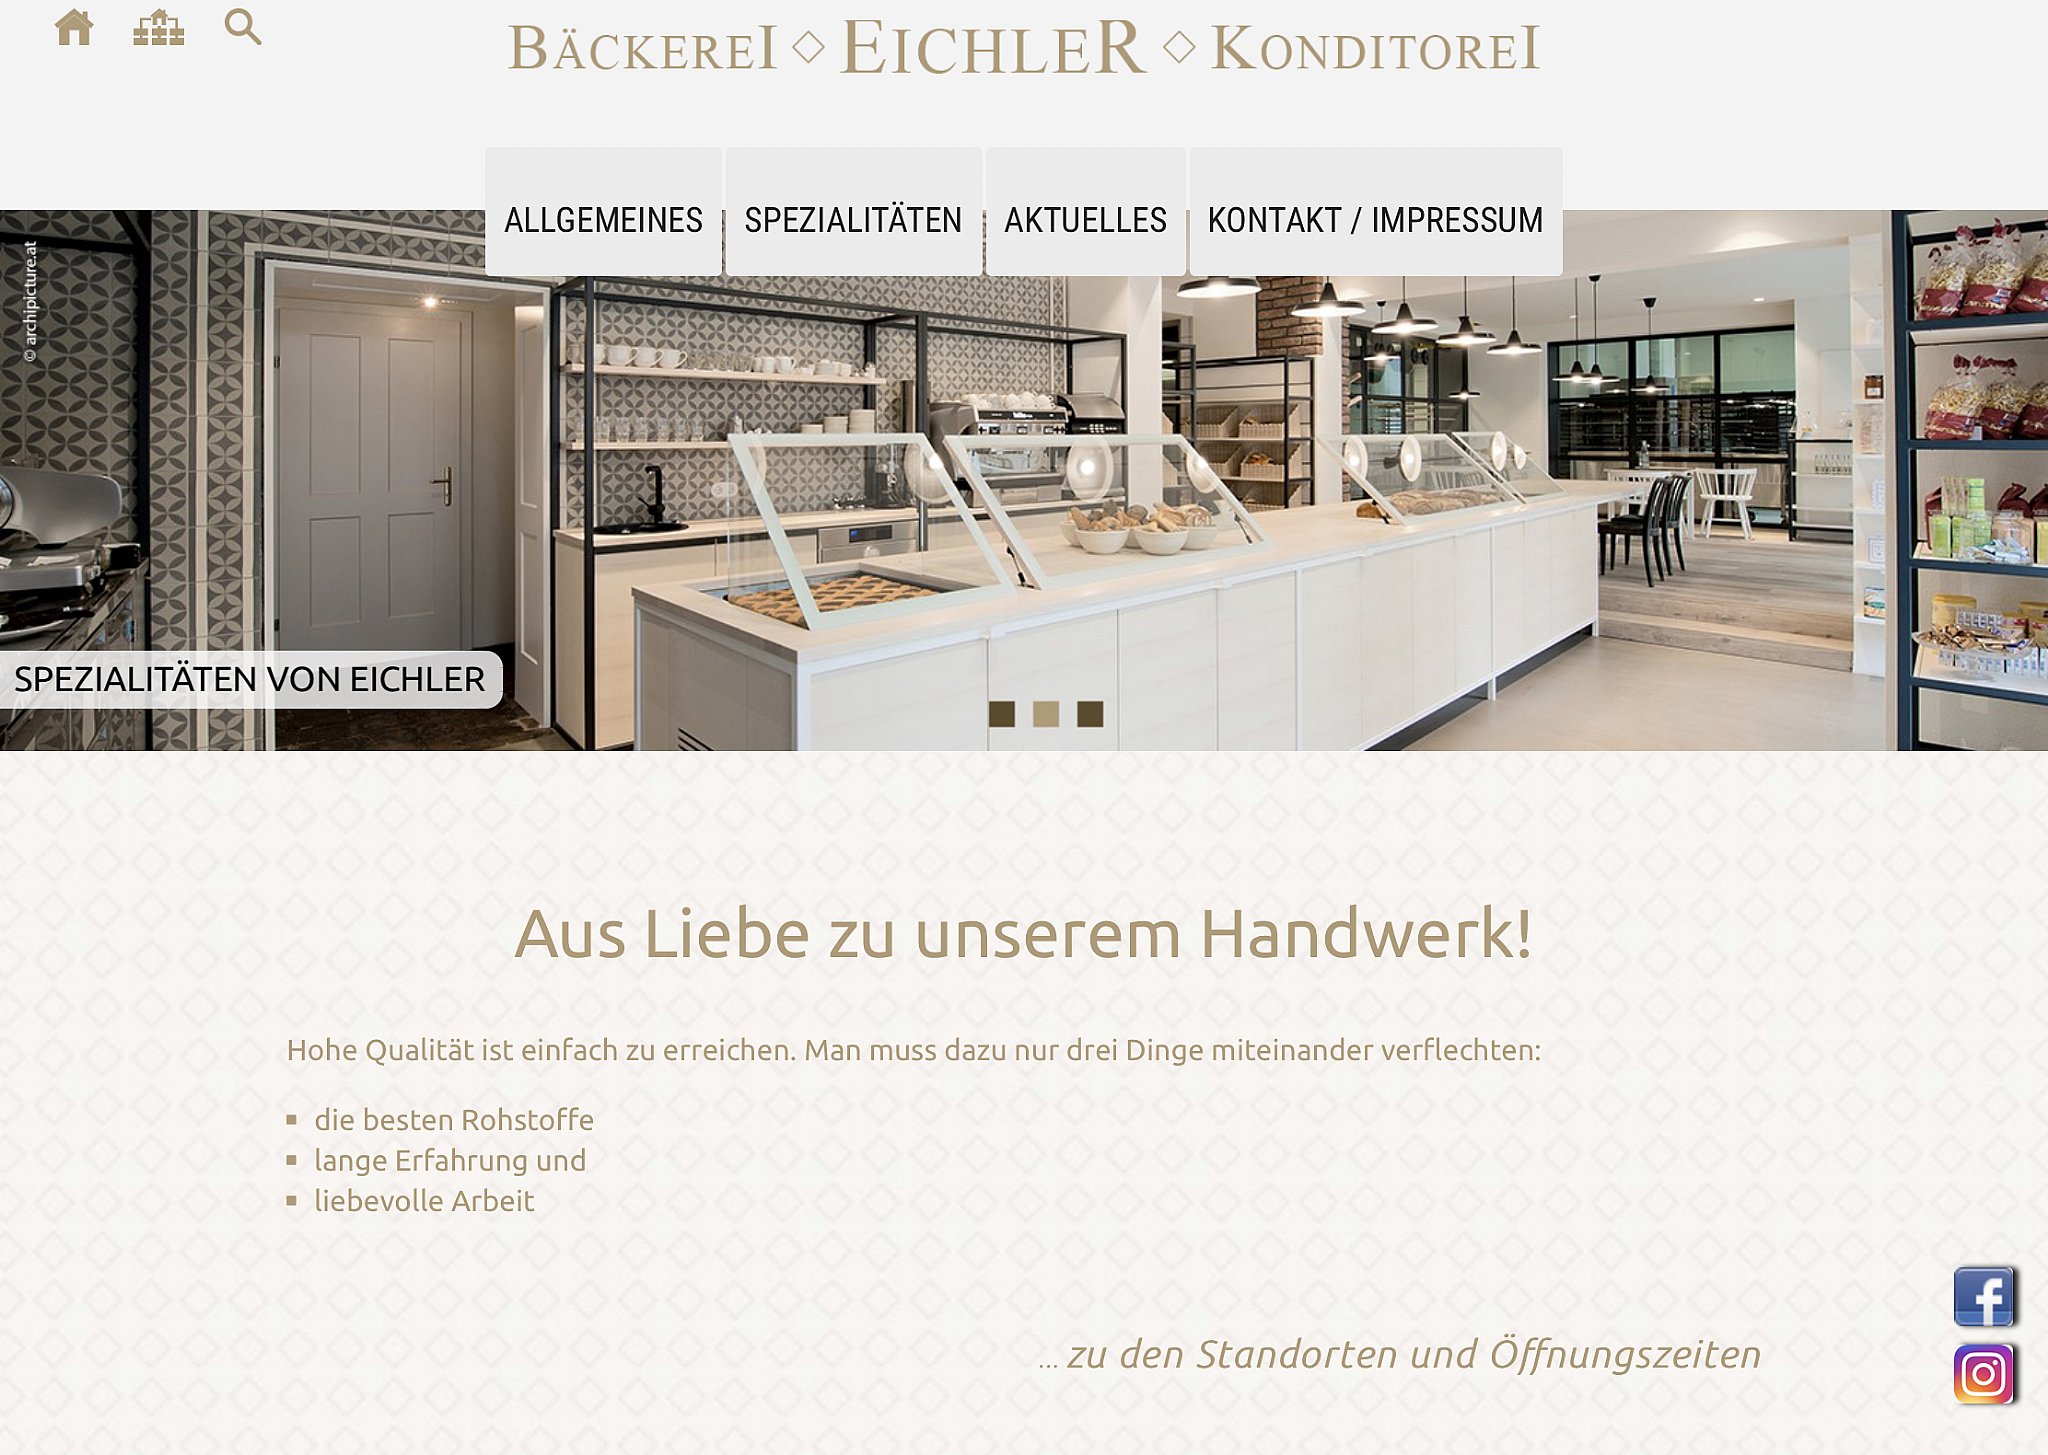 Bäckerei Eichler, Linz/Urfahr